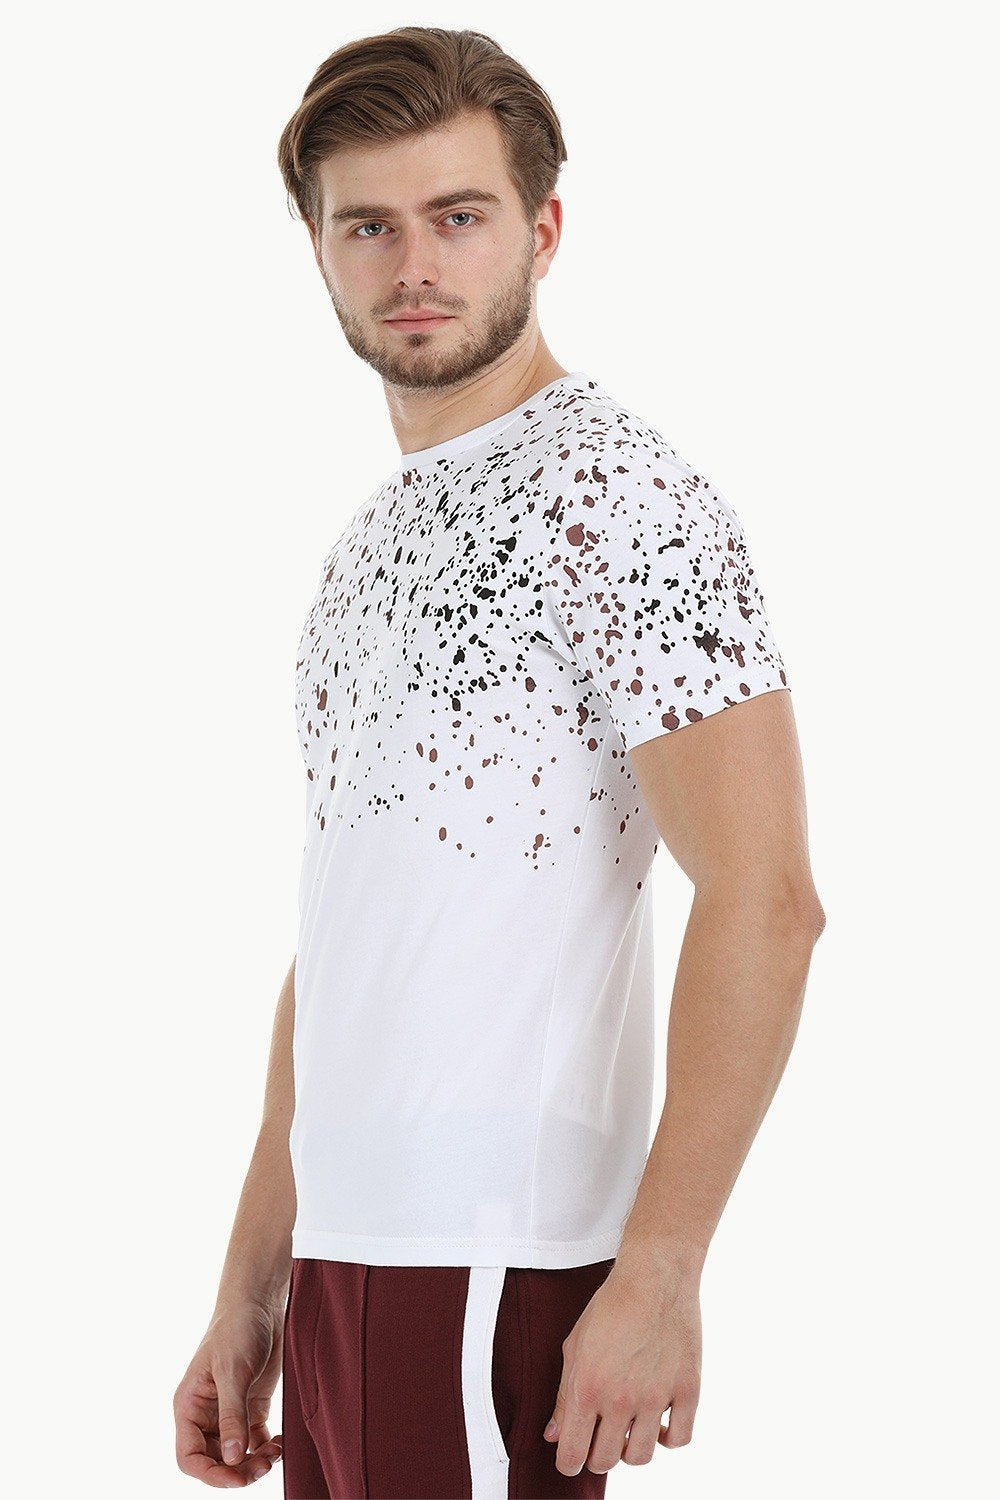 Buy Online Splatter Print White Crew T-Shirt for Men at Zobello